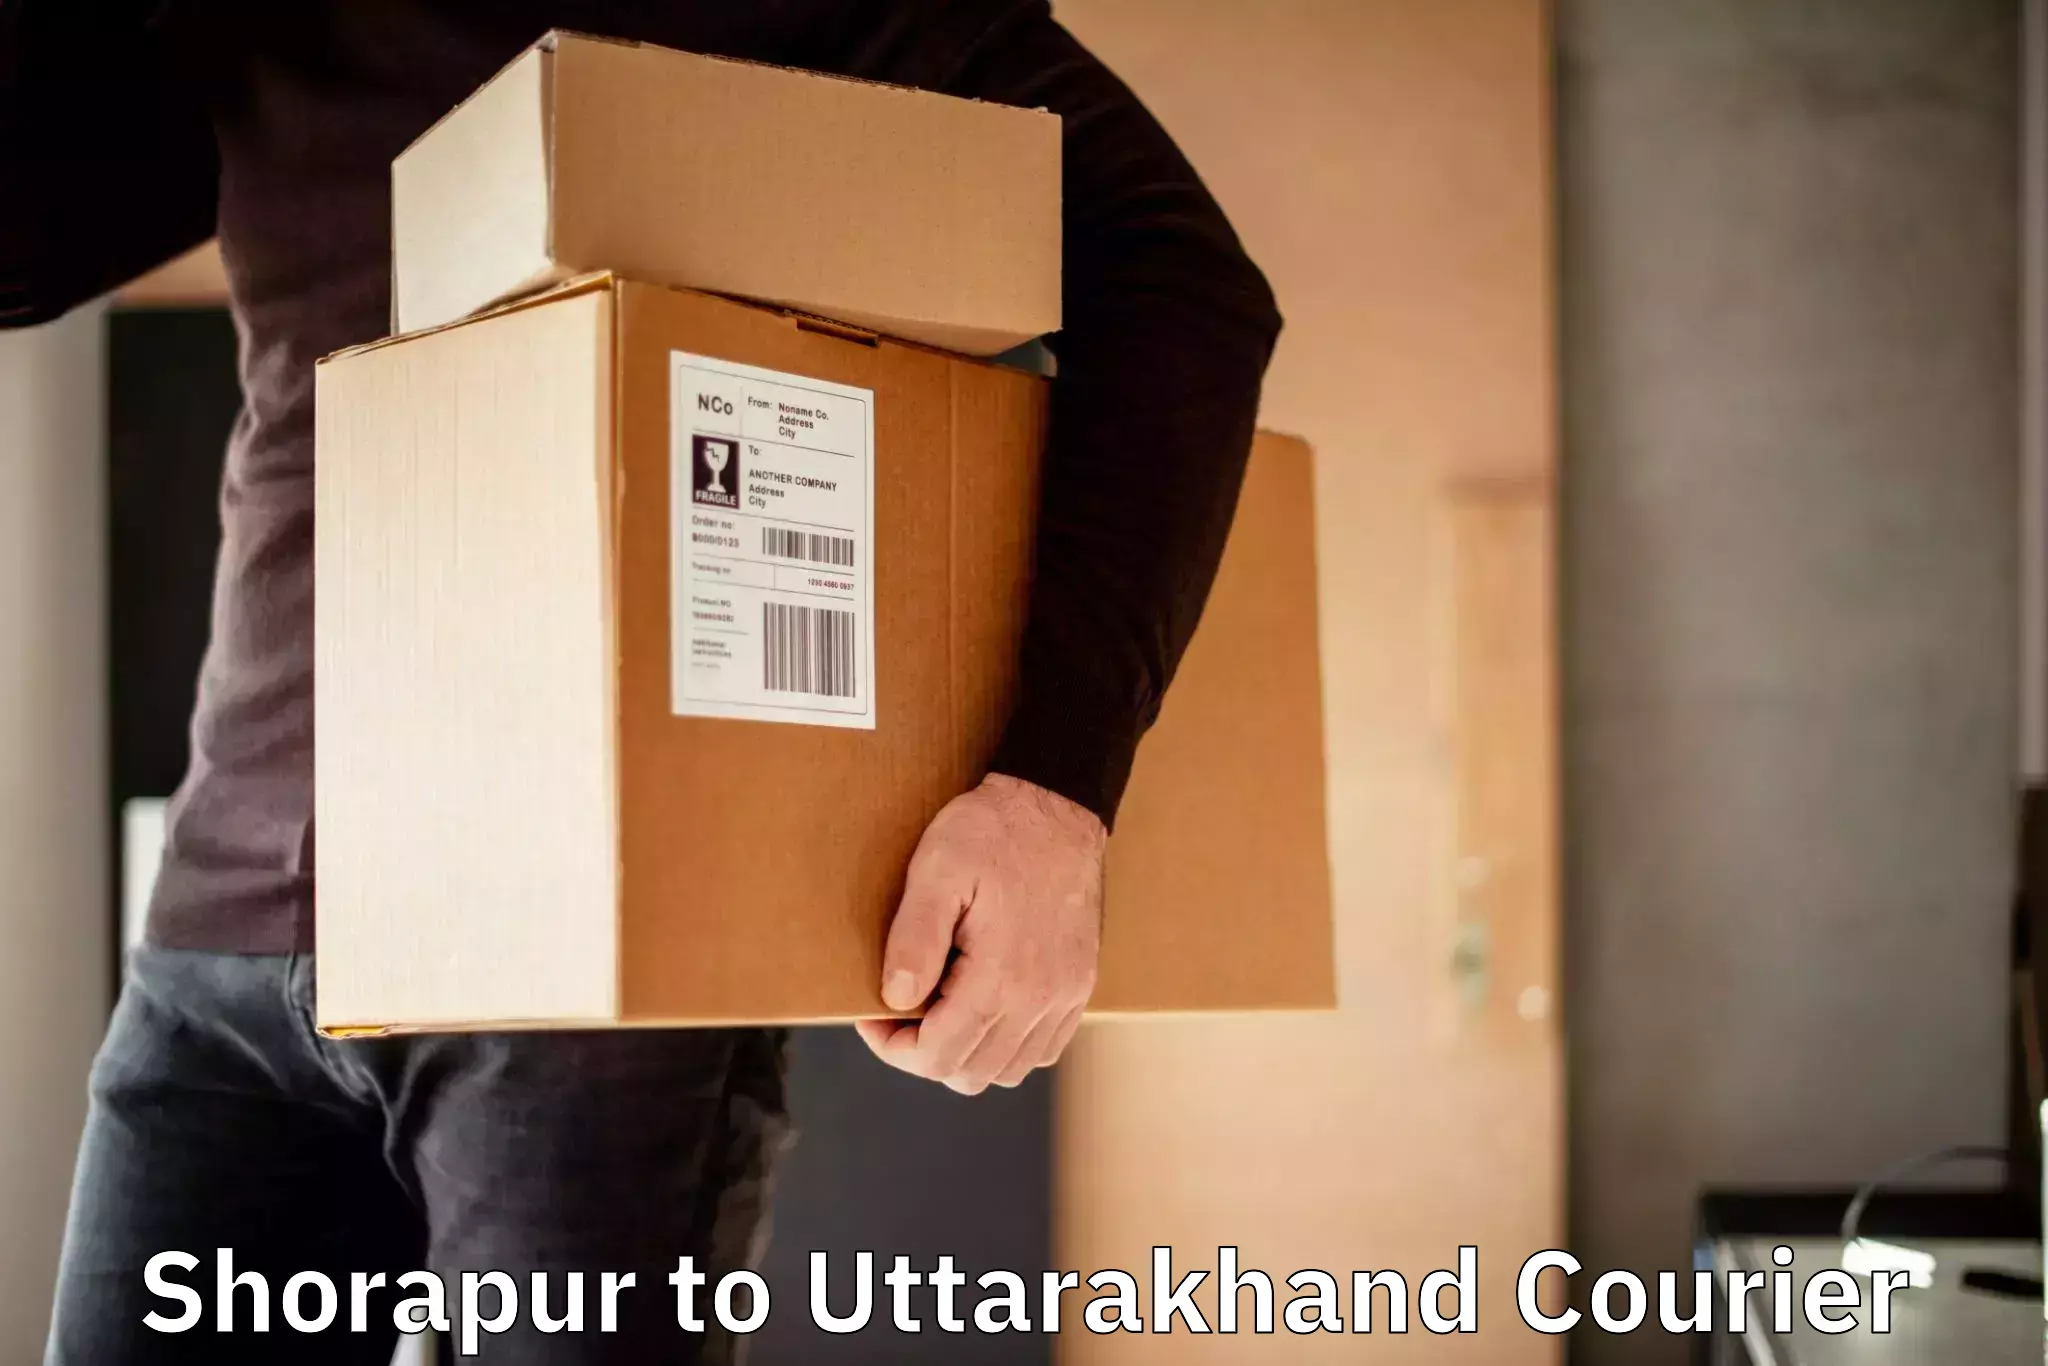 Global shipping networks in Shorapur to Uttarakhand